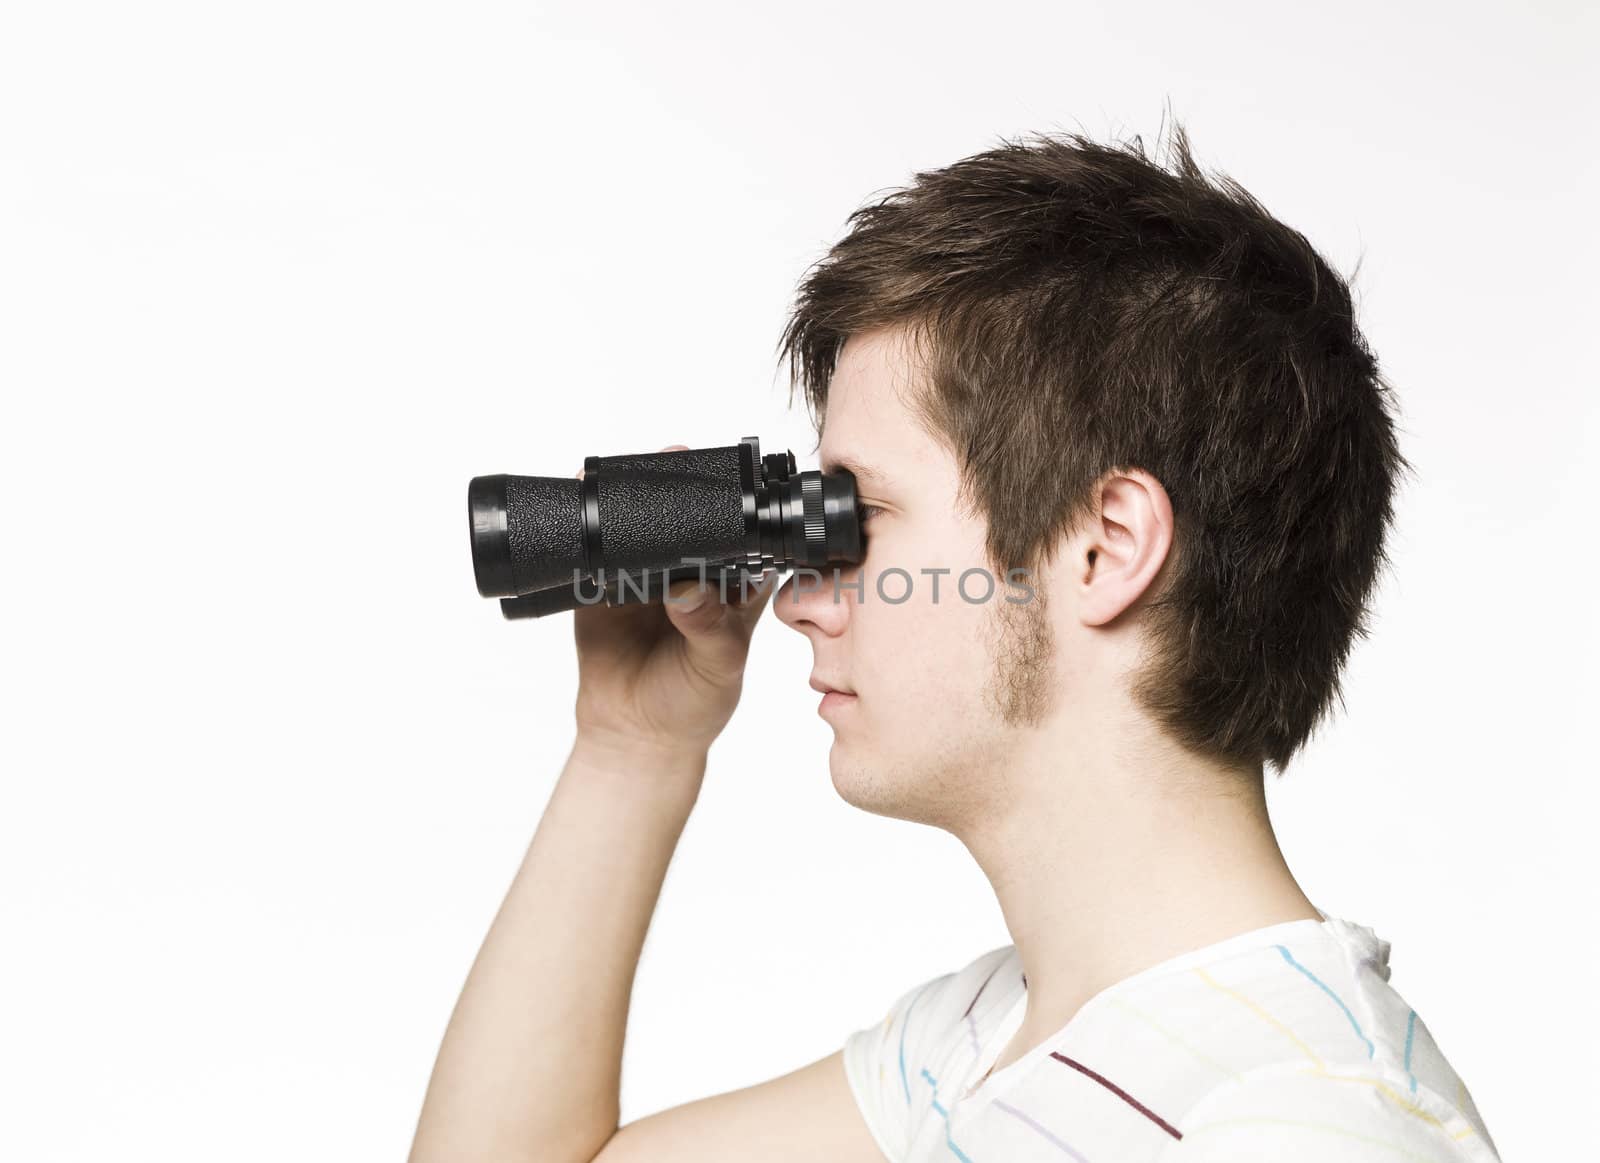 Man with binocular by gemenacom